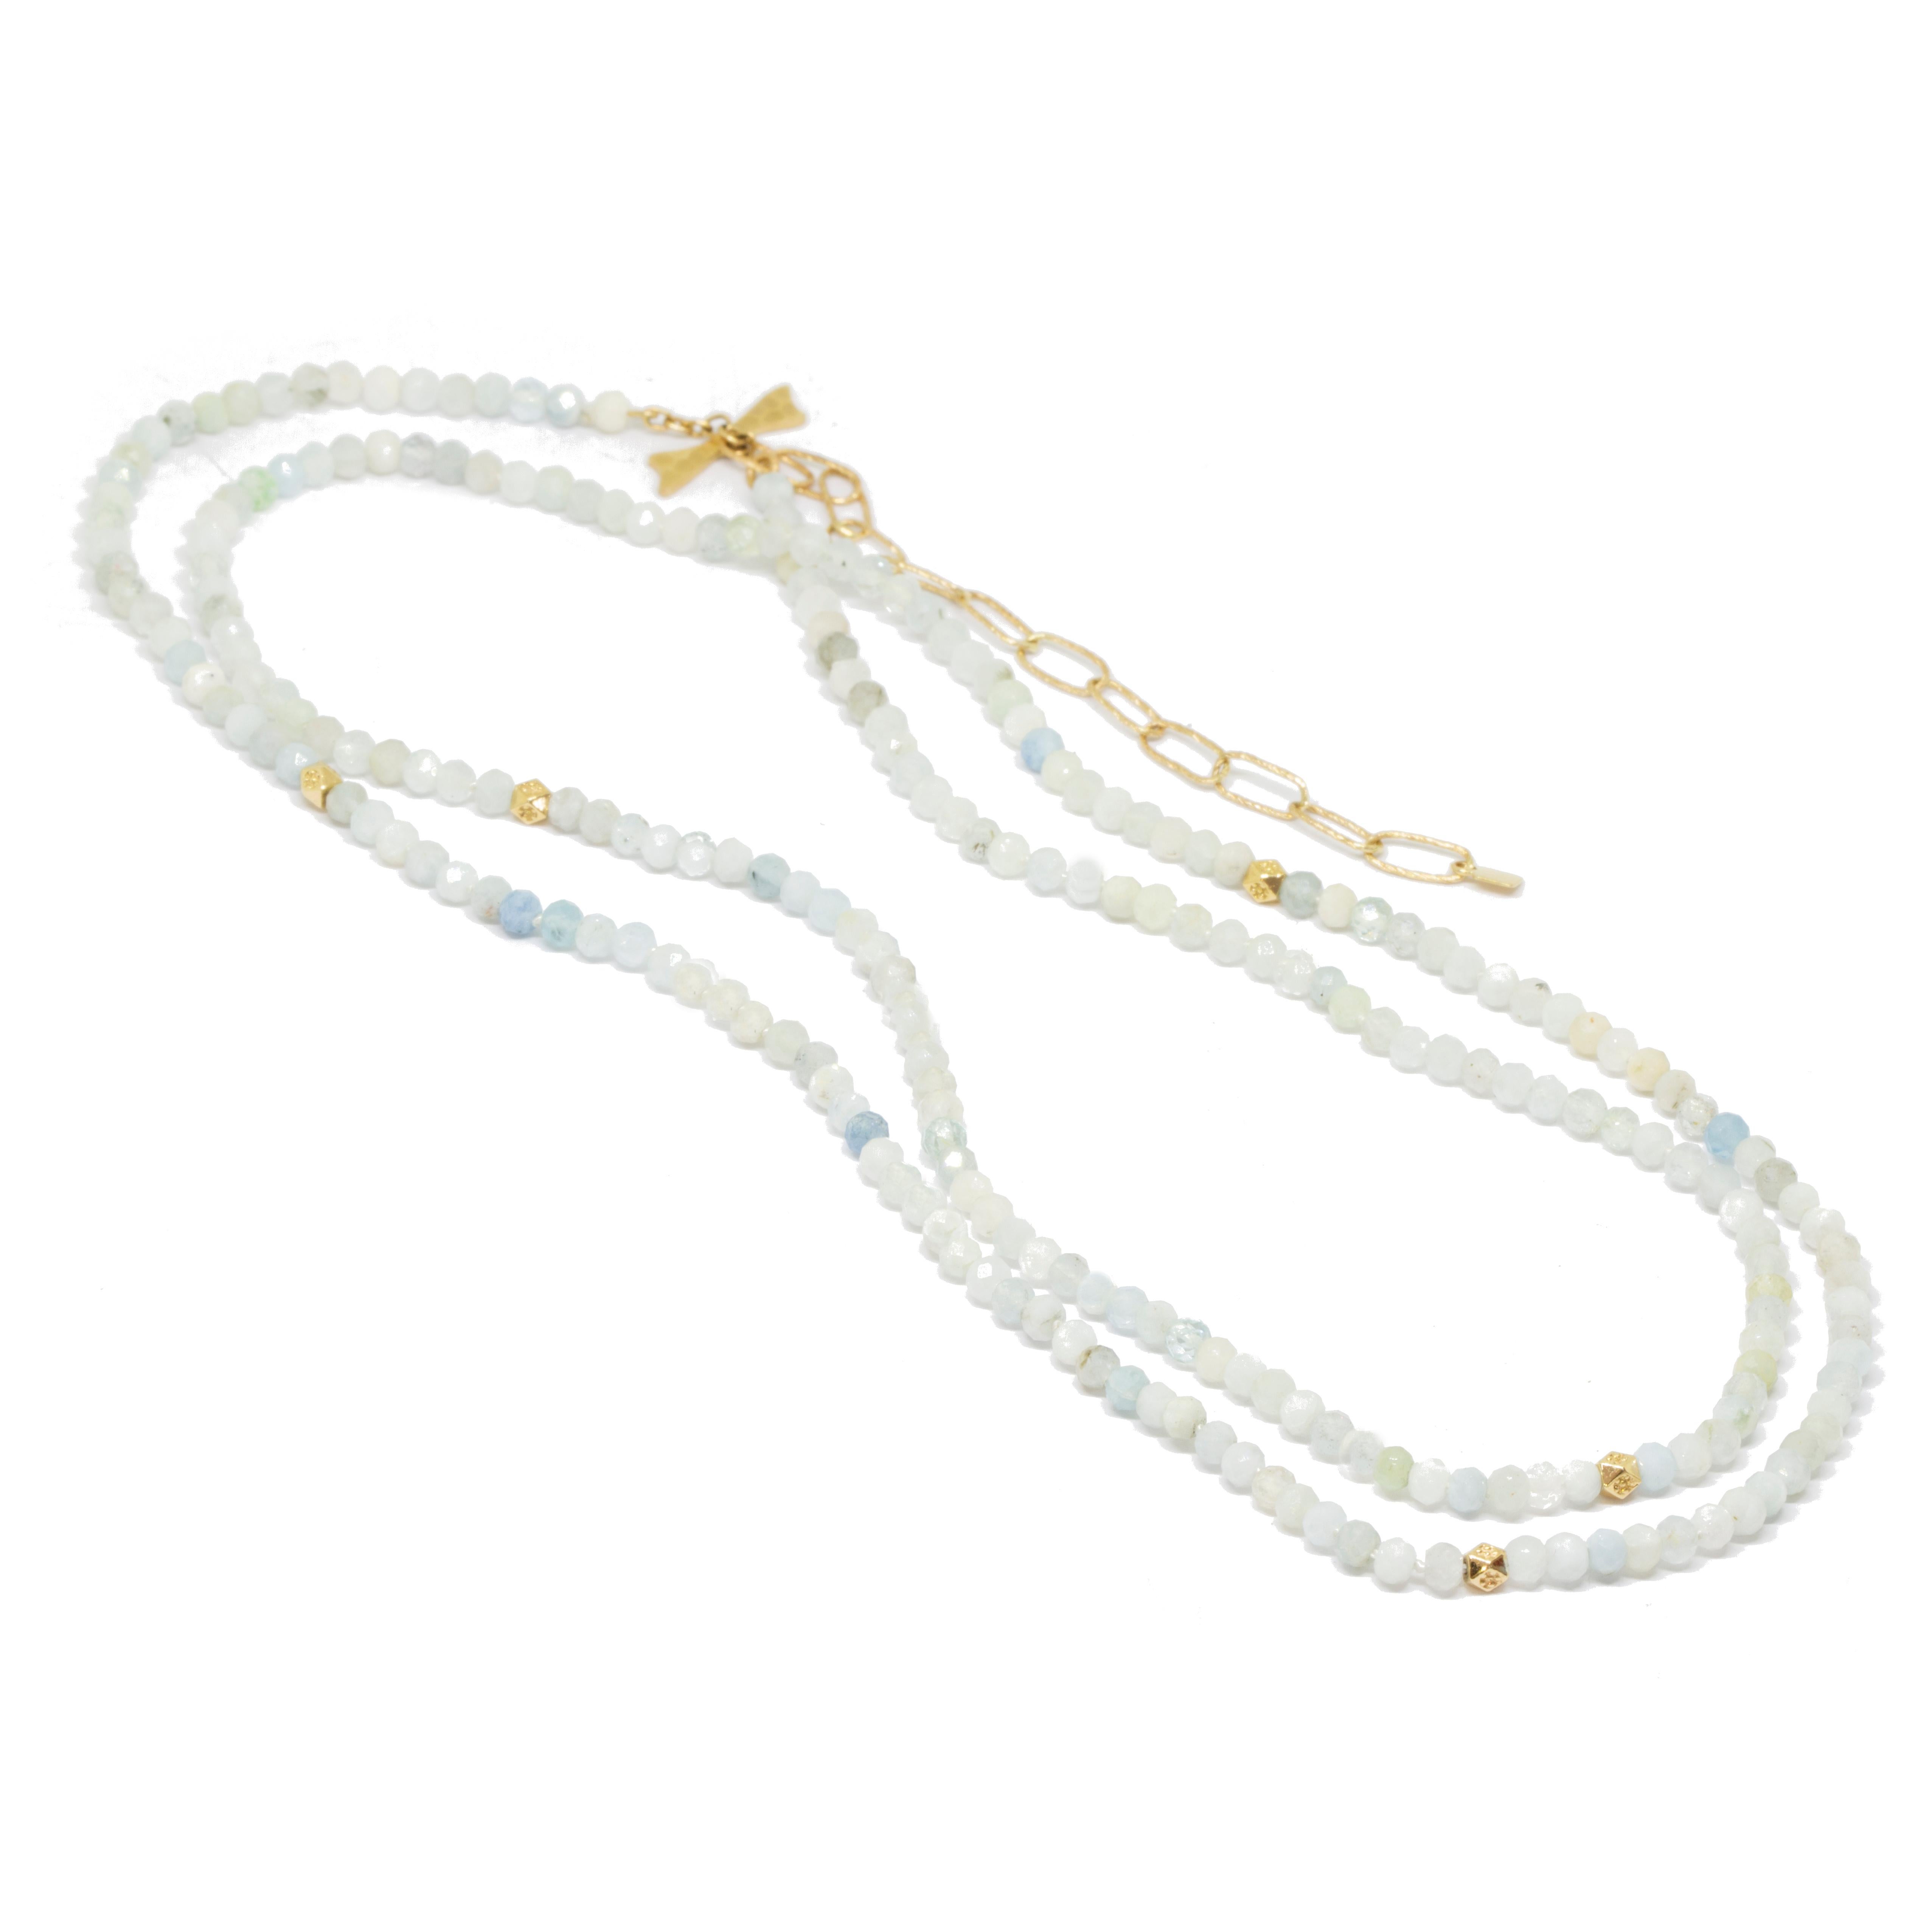 Das Beste an unserem Chloe Gold Gemstone Convertable Wrap ist nicht nur, dass es lang, doppelt oder als Wickelarmband getragen werden kann (obwohl das ziemlich cool ist). Sie können jeden unserer Charms auf die aquamarinfarbenen Perlen auffädeln -